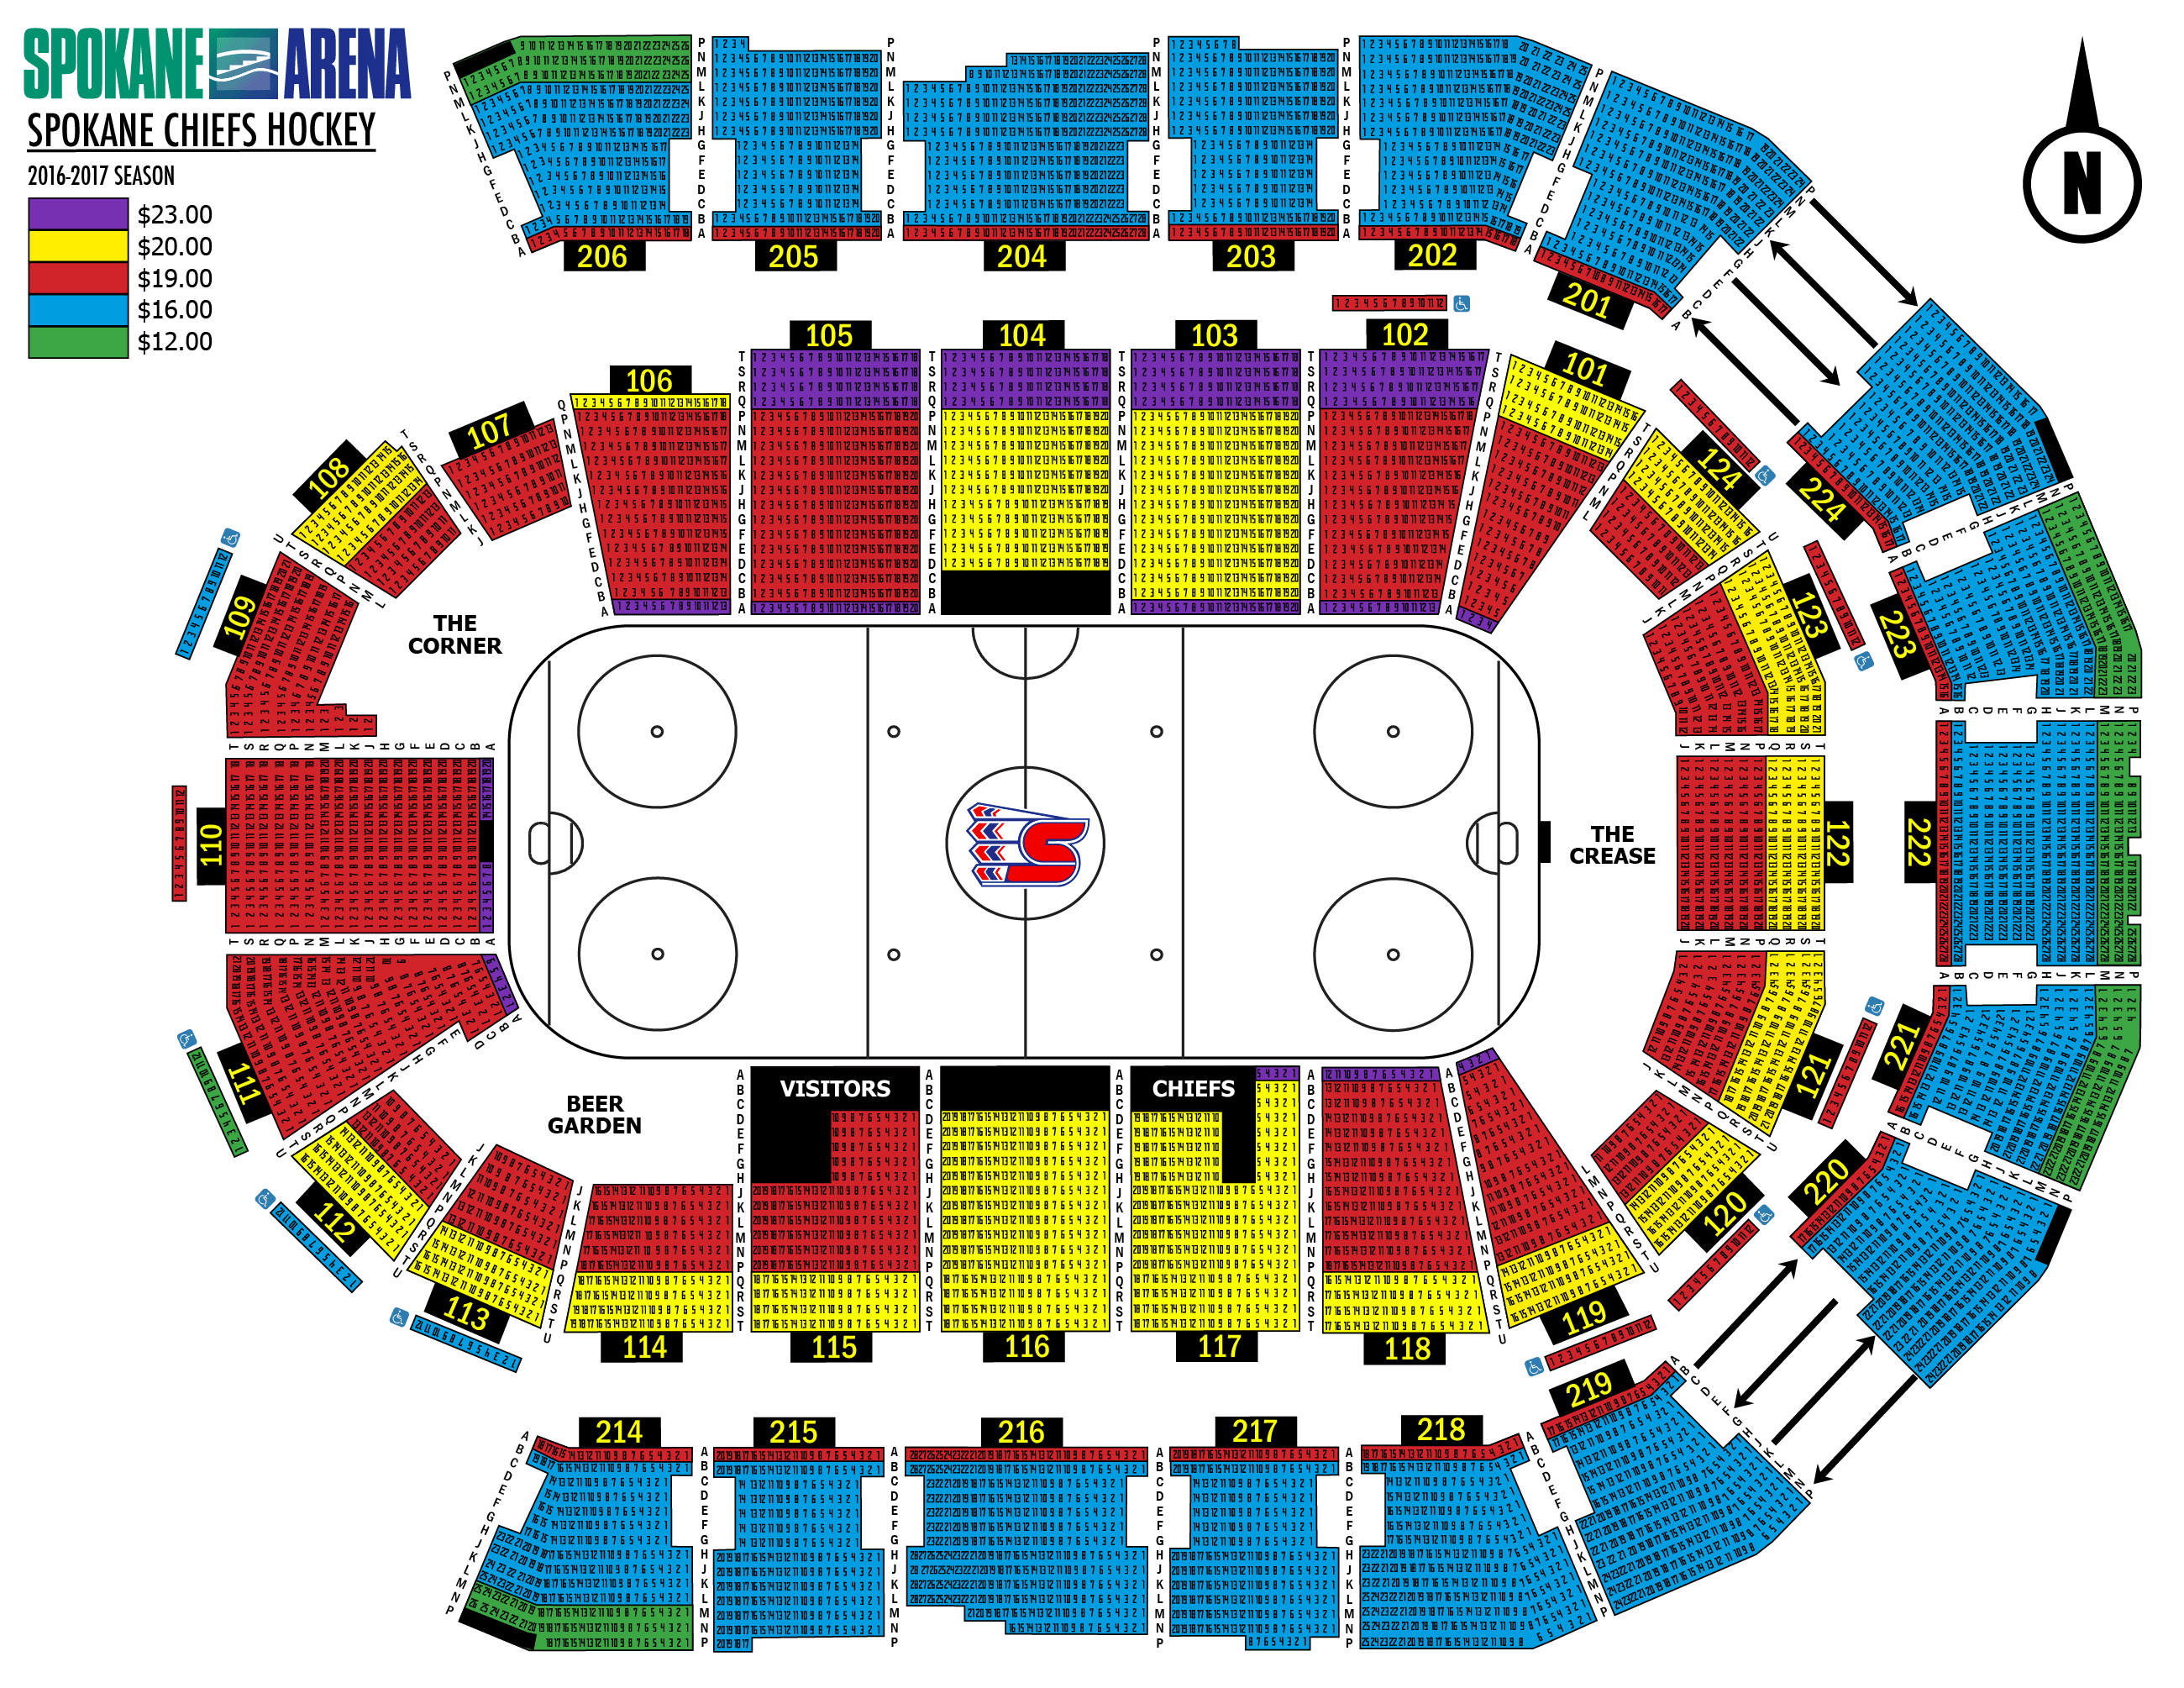 Spokane Chiefs | Spokane Arena | Saturday, February 25 | $10 to $23